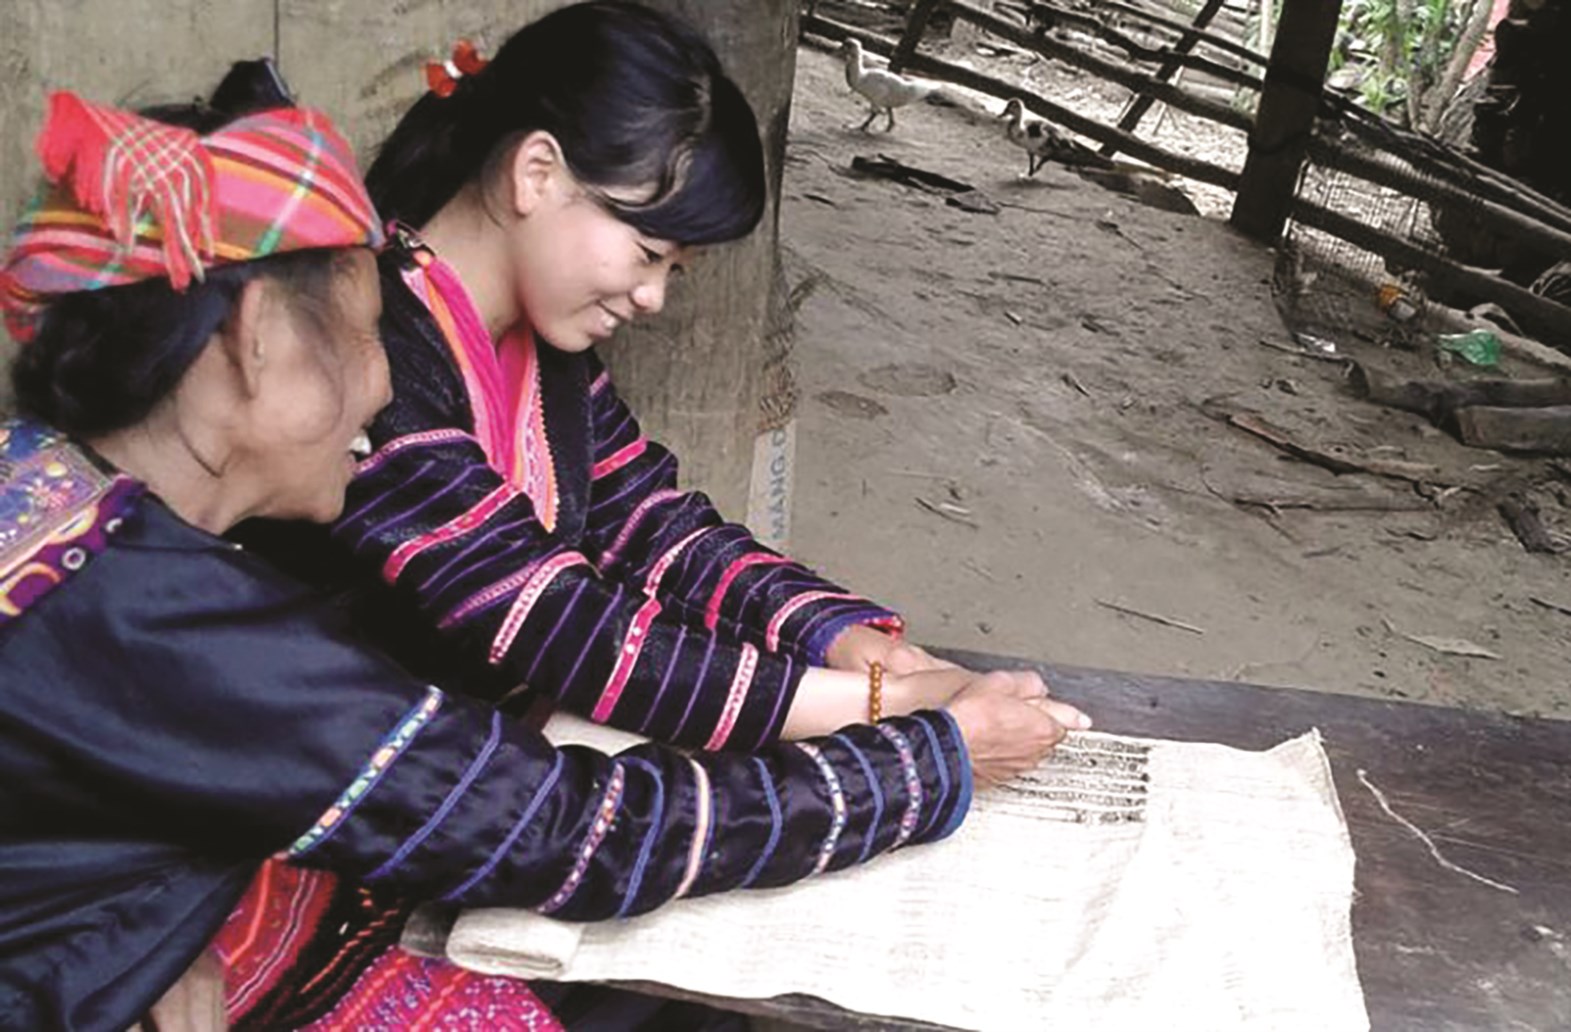  Nghệ thuật tạo hoa văn bằng sáp ong trên trang phục của người Mông (nhóm Mông Hoa) ở huyện Mường Chà (Điện Biên) được công nhận là Di sản văn hóa phi vật thể cấp quốc gia năm 2018 nhưng đến nay vẫn chưa có phương án bảo tồn cụ thể. (Ảnh tư liệu)